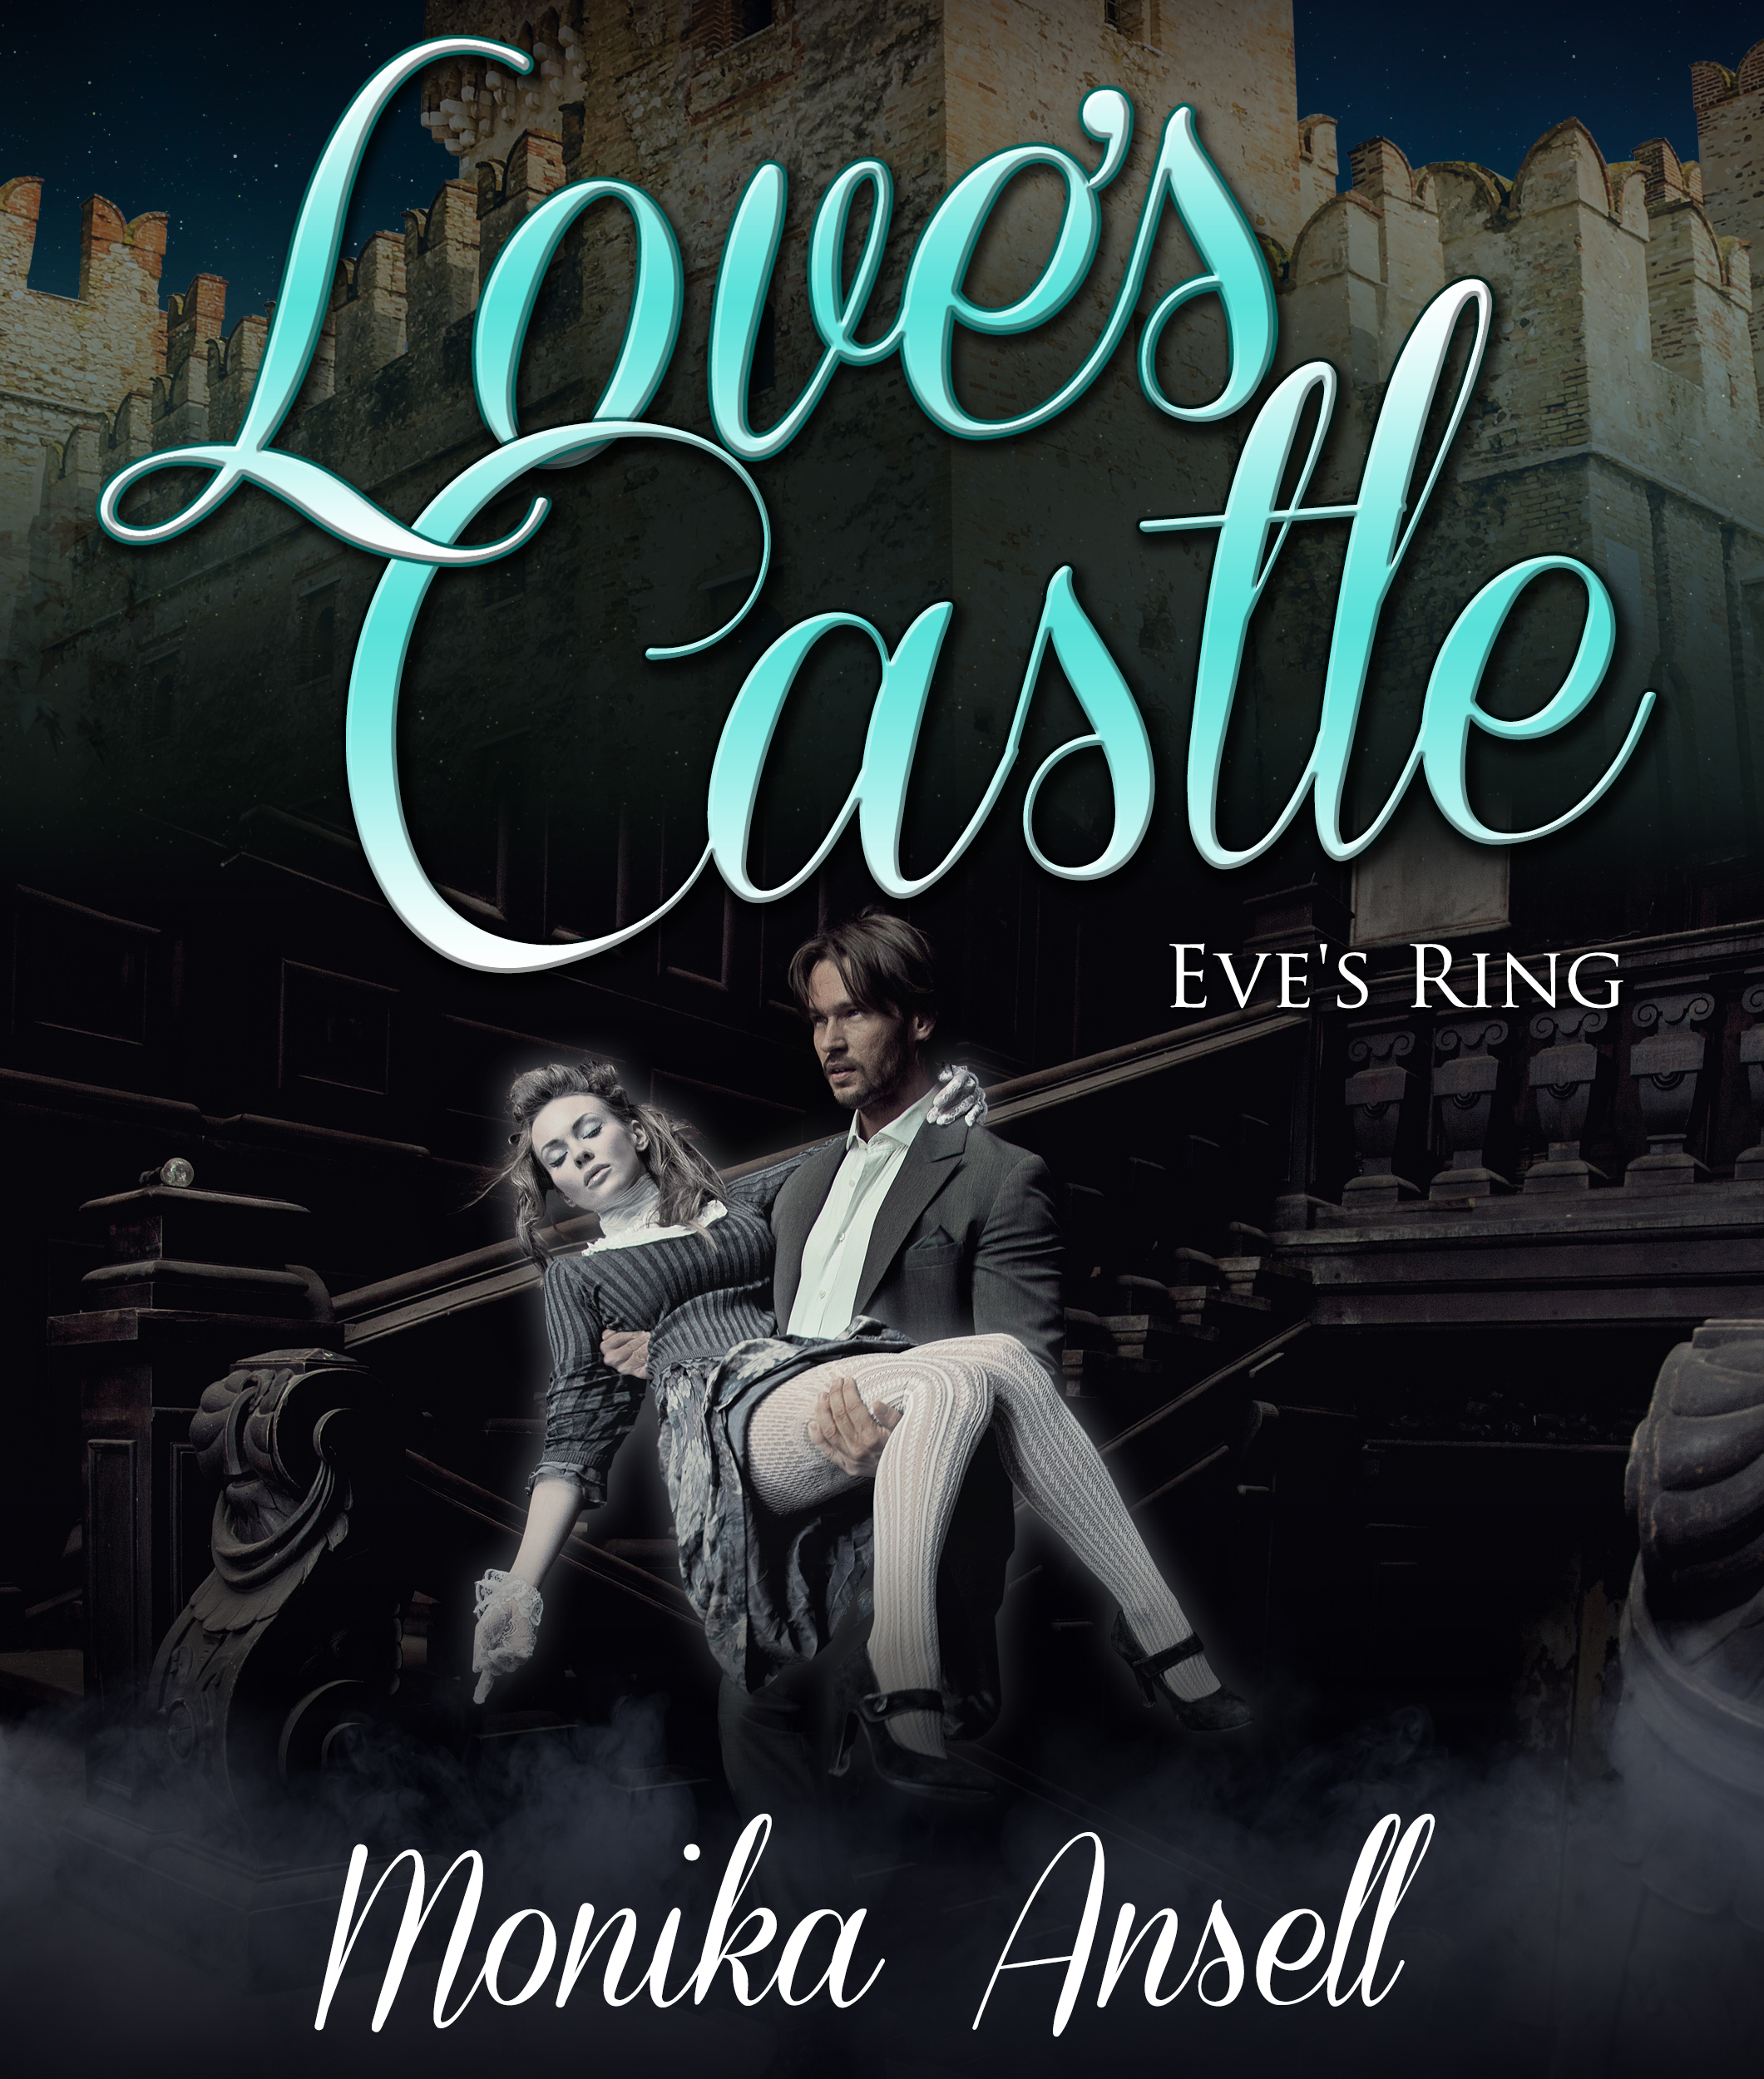 Love's Castle